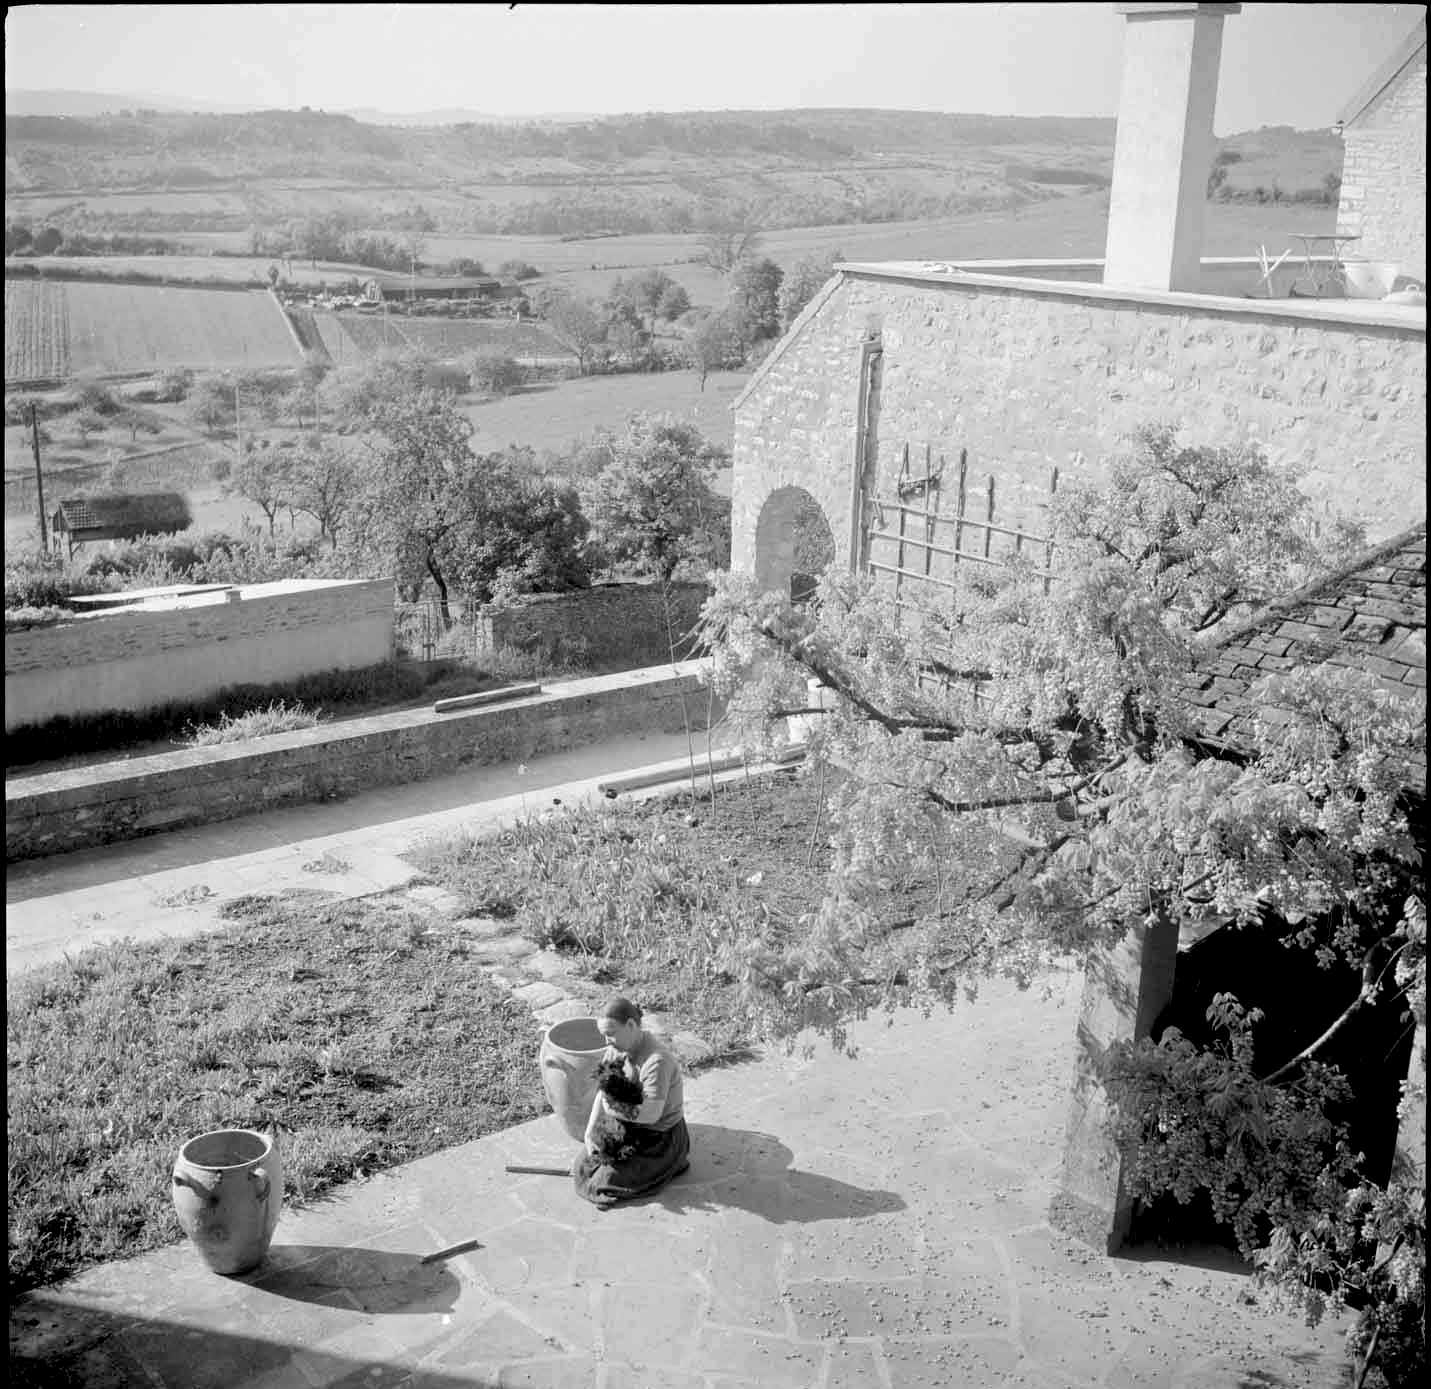 Marie, veuve de Romain Rolland, sur la terrasse de leur maison à Vezelay